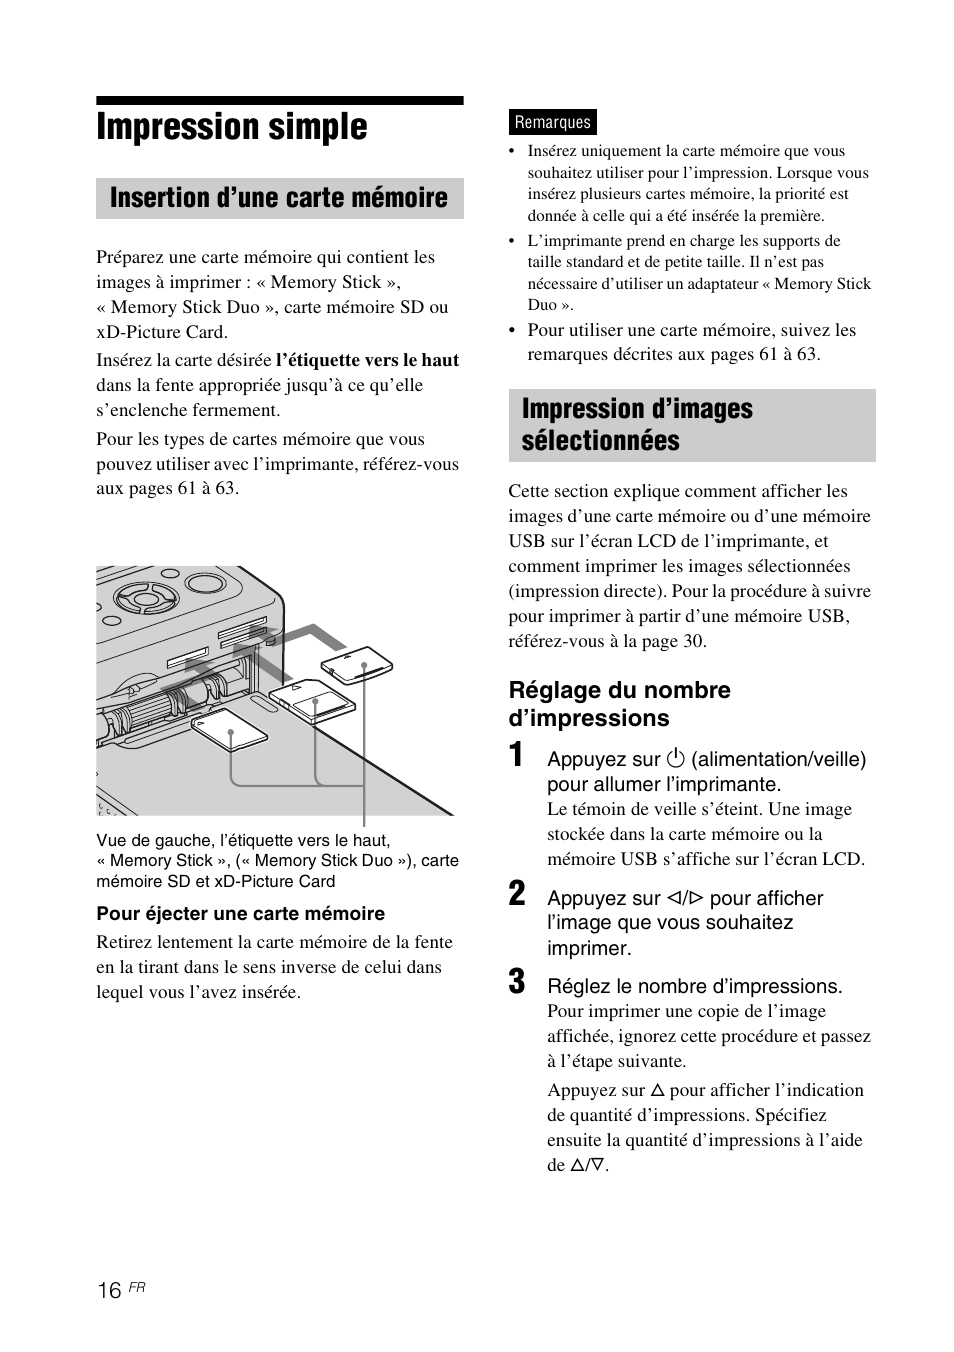 Impression simple, Insertion d’une carte mémoire, Impression d’images sélectionnées | Es 16 | Sony DPP-FP65 Manuel d'utilisation | Page 16 / 72